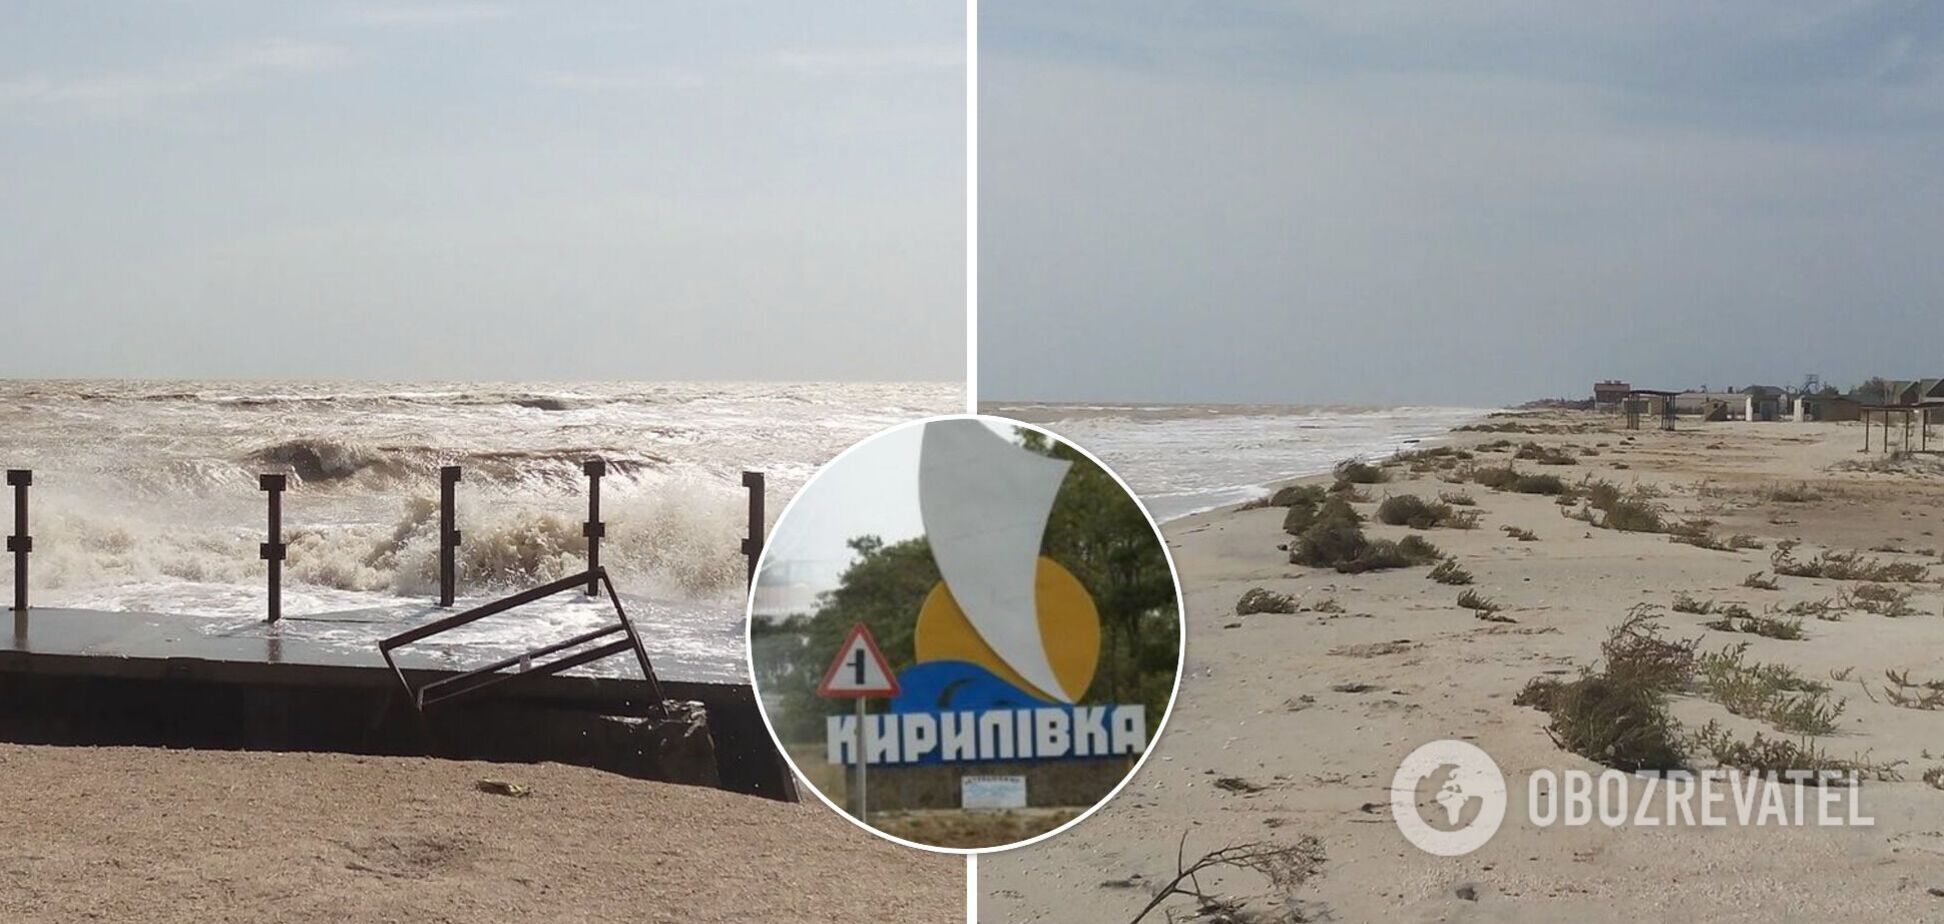 'Русский мир' как он есть: в сеть выложили фото заброшенных пляжей Кирилловки